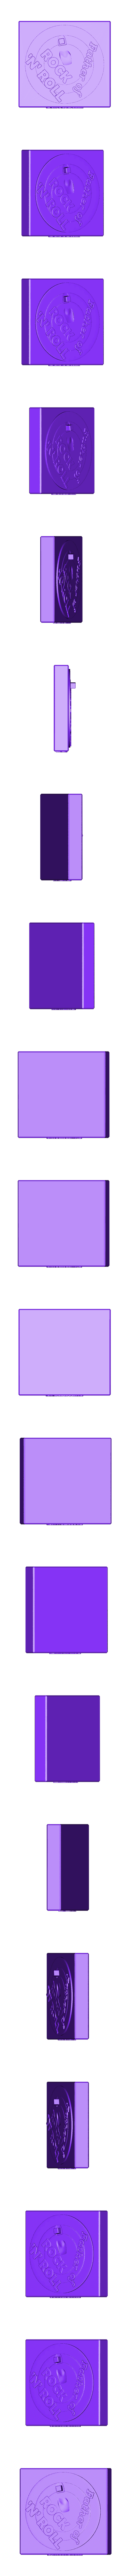 part 7.stl Fichier STL chuck berry - 3rprinting・Design pour impression 3D à télécharger, ronnie_yonk